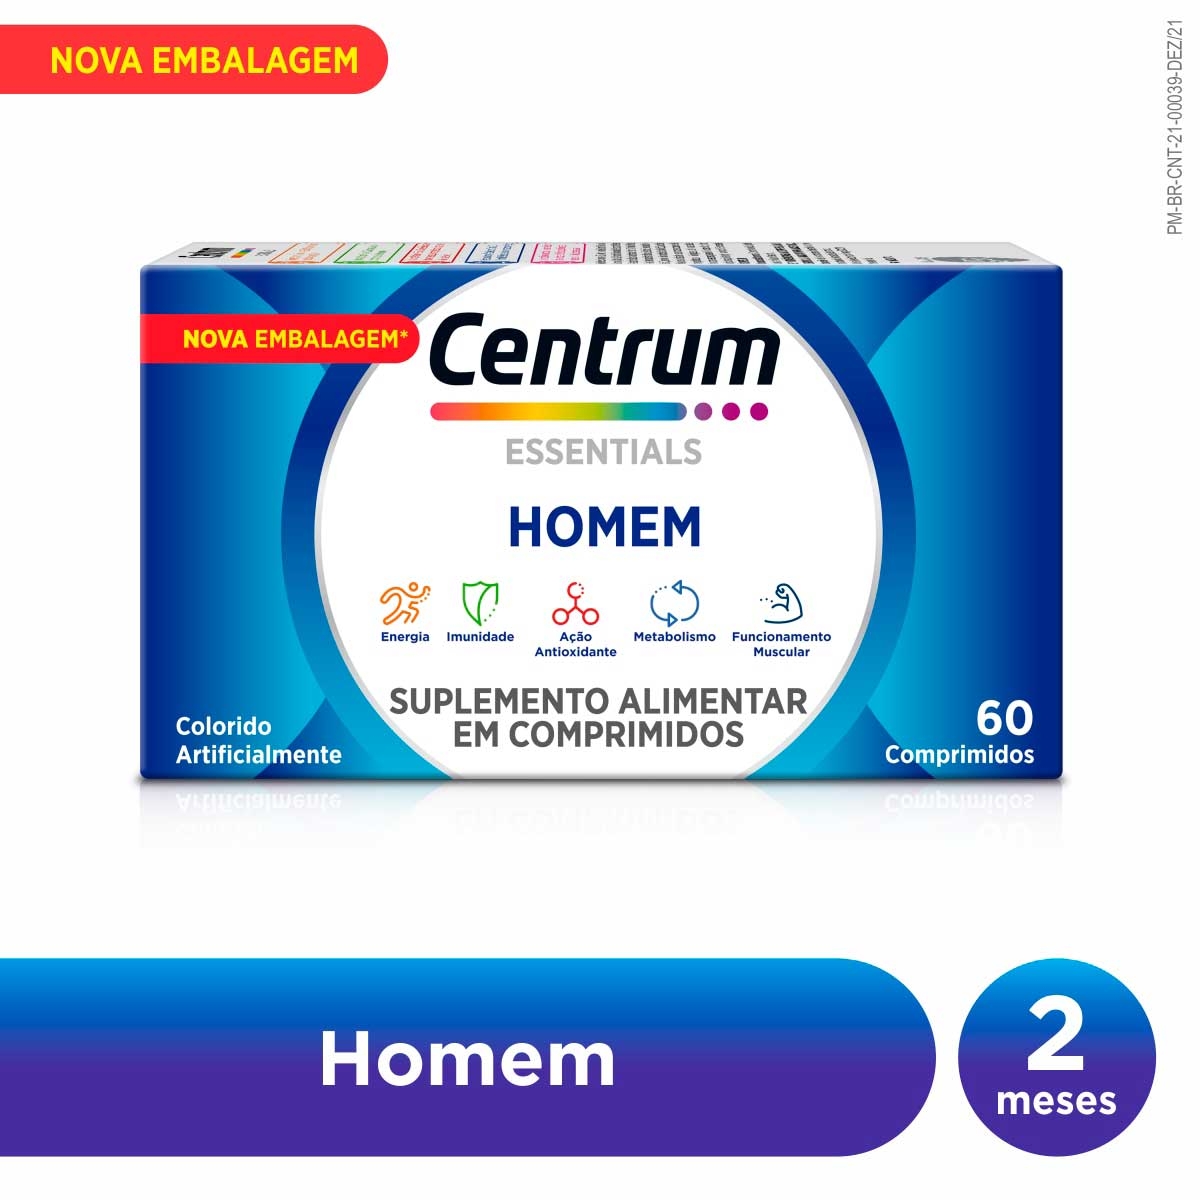 Polivitamínico Centrum Essentials Homem de A a Zinco 60 comprimidos